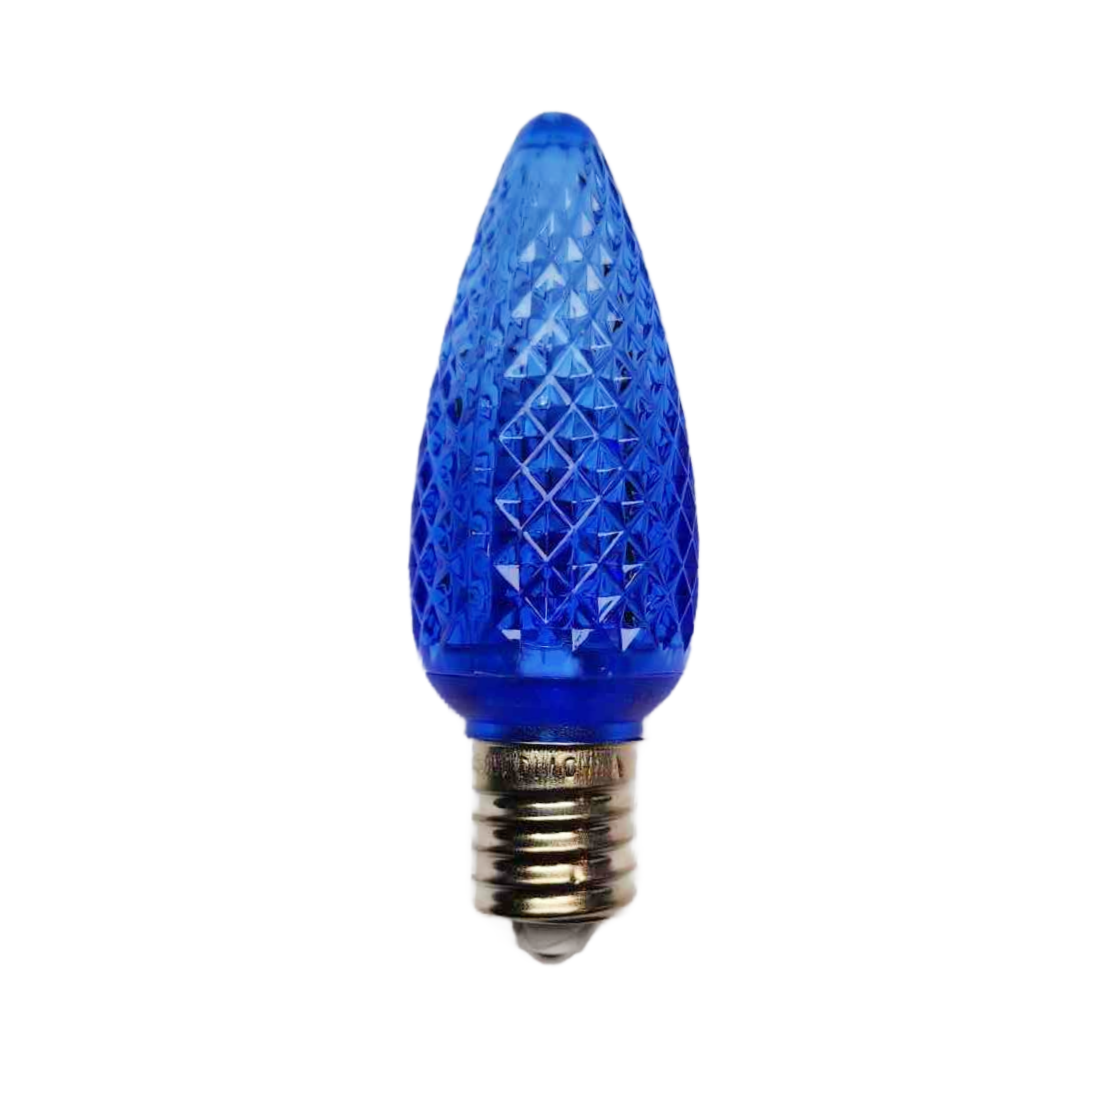 C9 Bulb Blue V1 Lightweight Shell